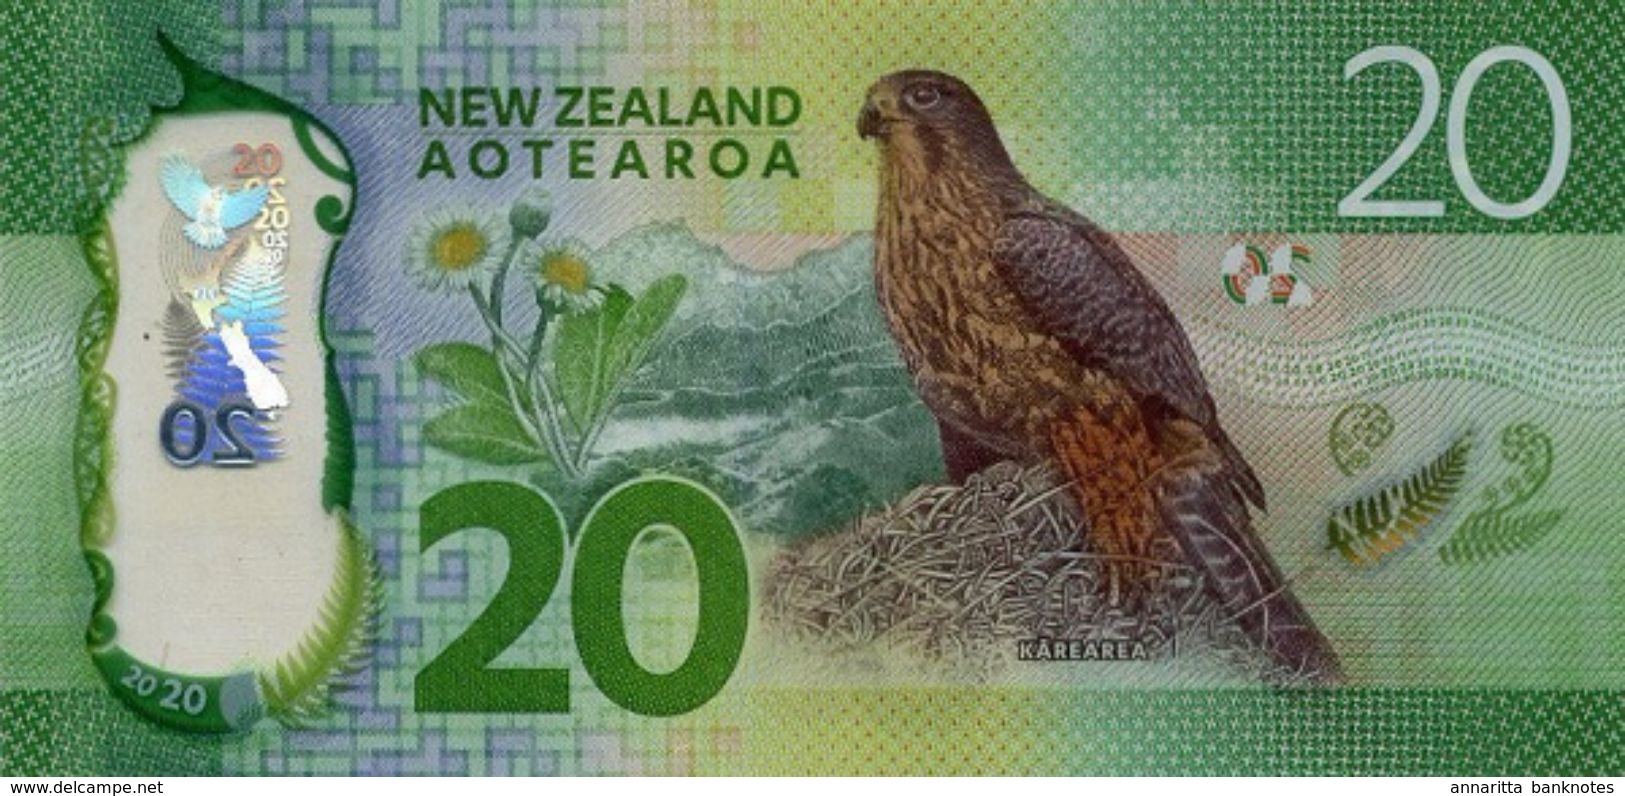 NEW ZEALAND 20 DOLLARS ND (2016) P-193a UNC [NZ139a] - New Zealand